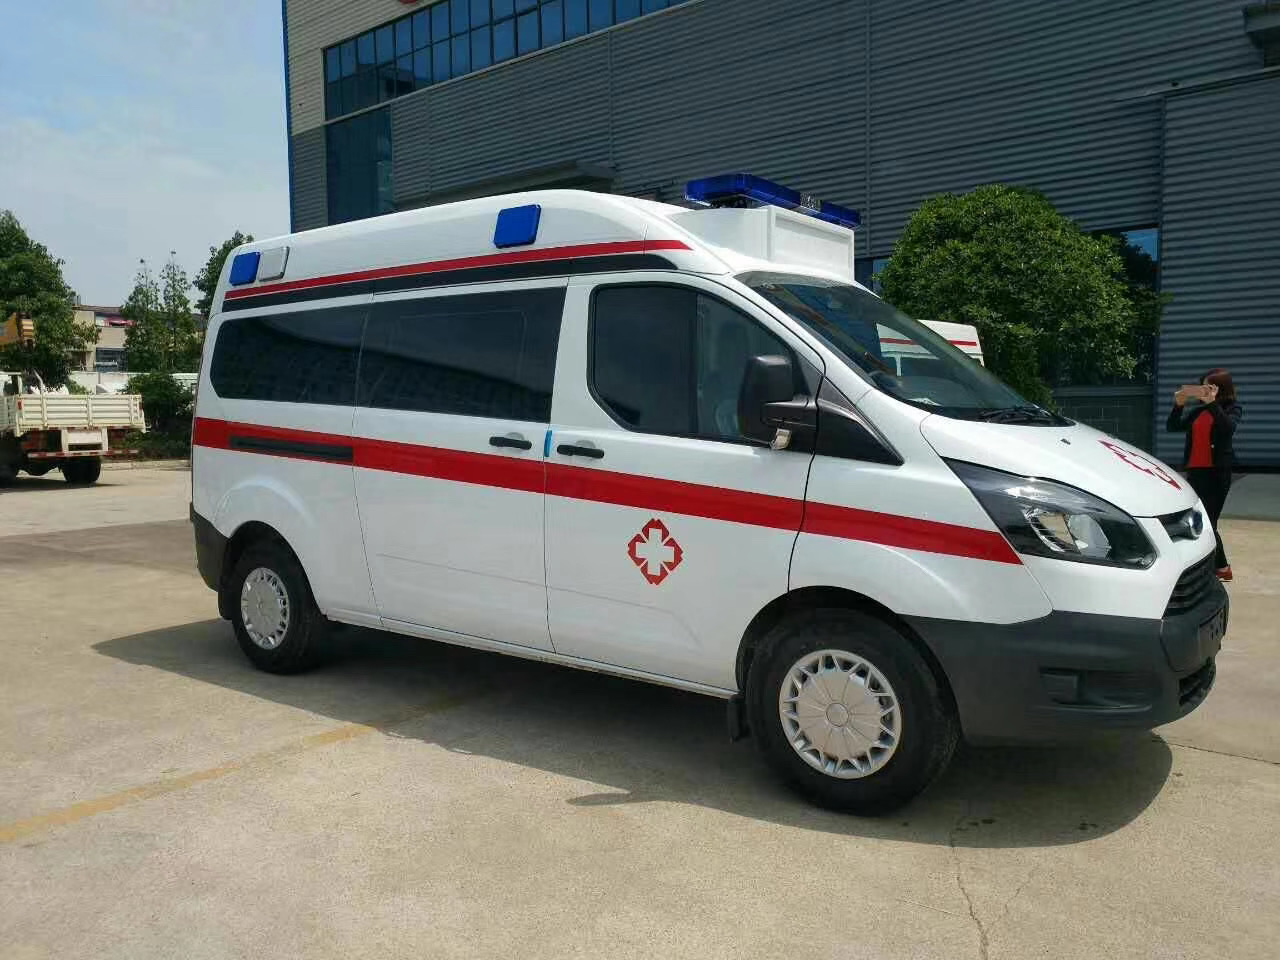 固阳县出院转院救护车